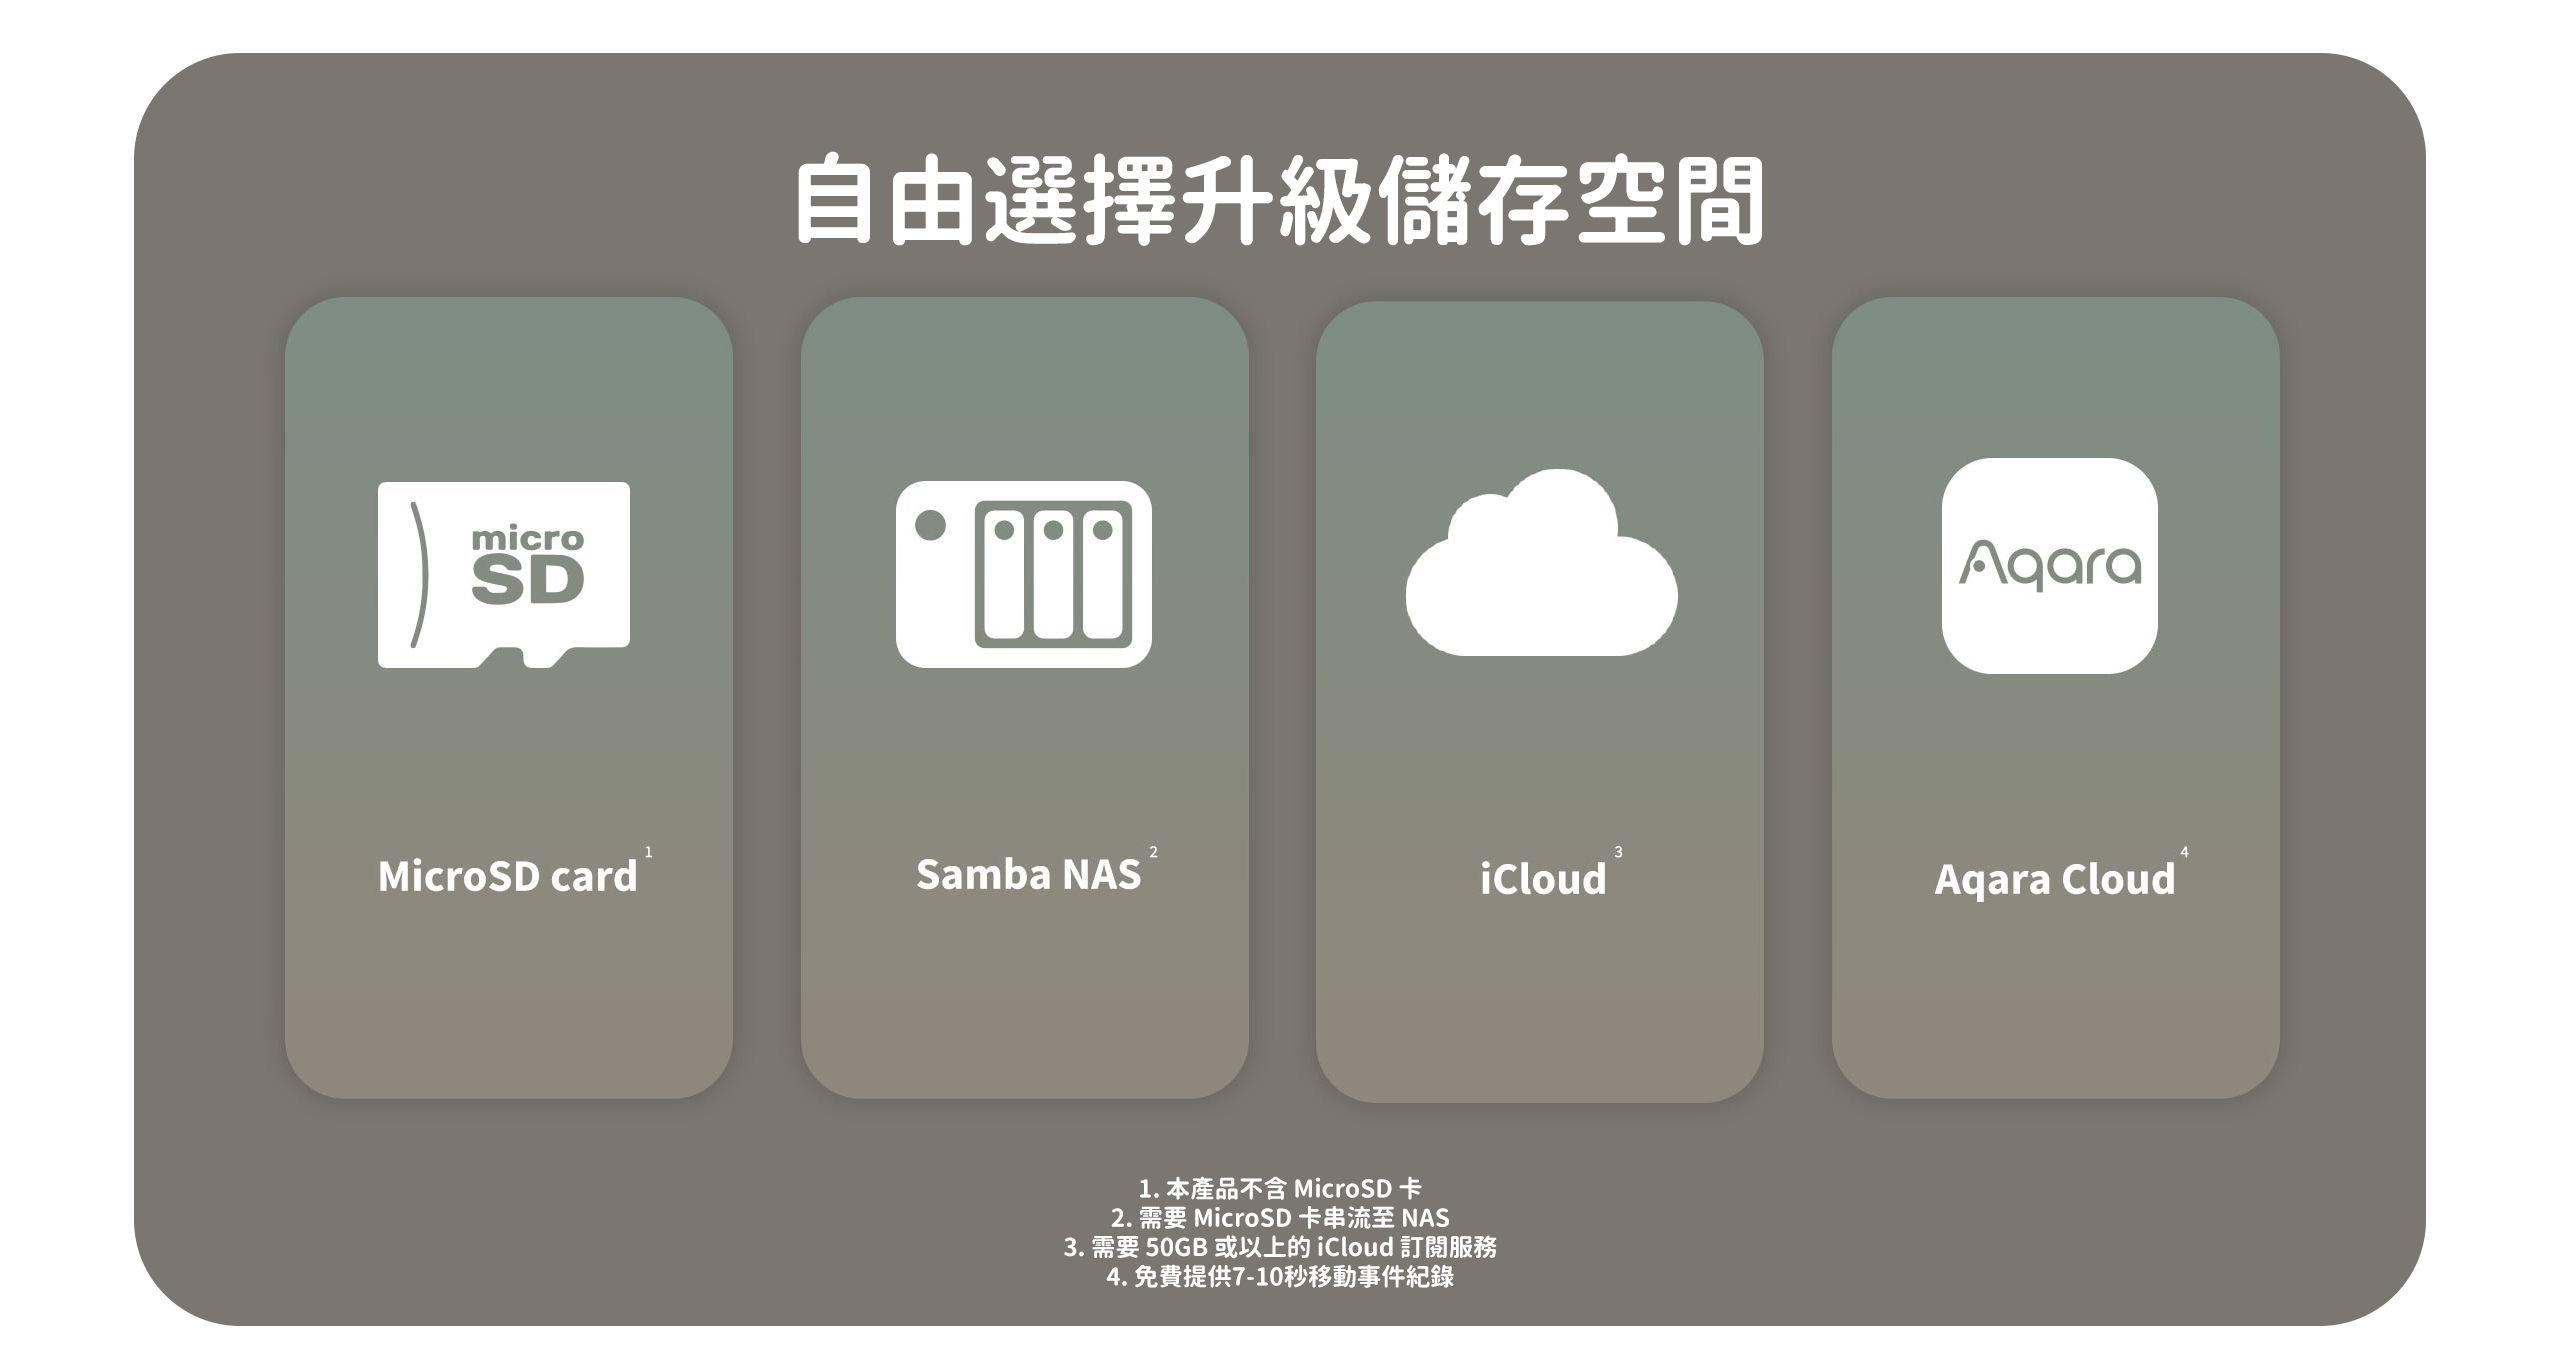 自由選擇升級儲存空間：MicroSD card、Samba NAS、iCloud、Agara Cloud。1. 本產品不含 MicrosD 卡 2. 需要 MicrosD 卡串流至 NAS 3. 需要 50GB 或以上的 icloud 訂閱服務 4. 免費提供7-10秒移動事件紀錄